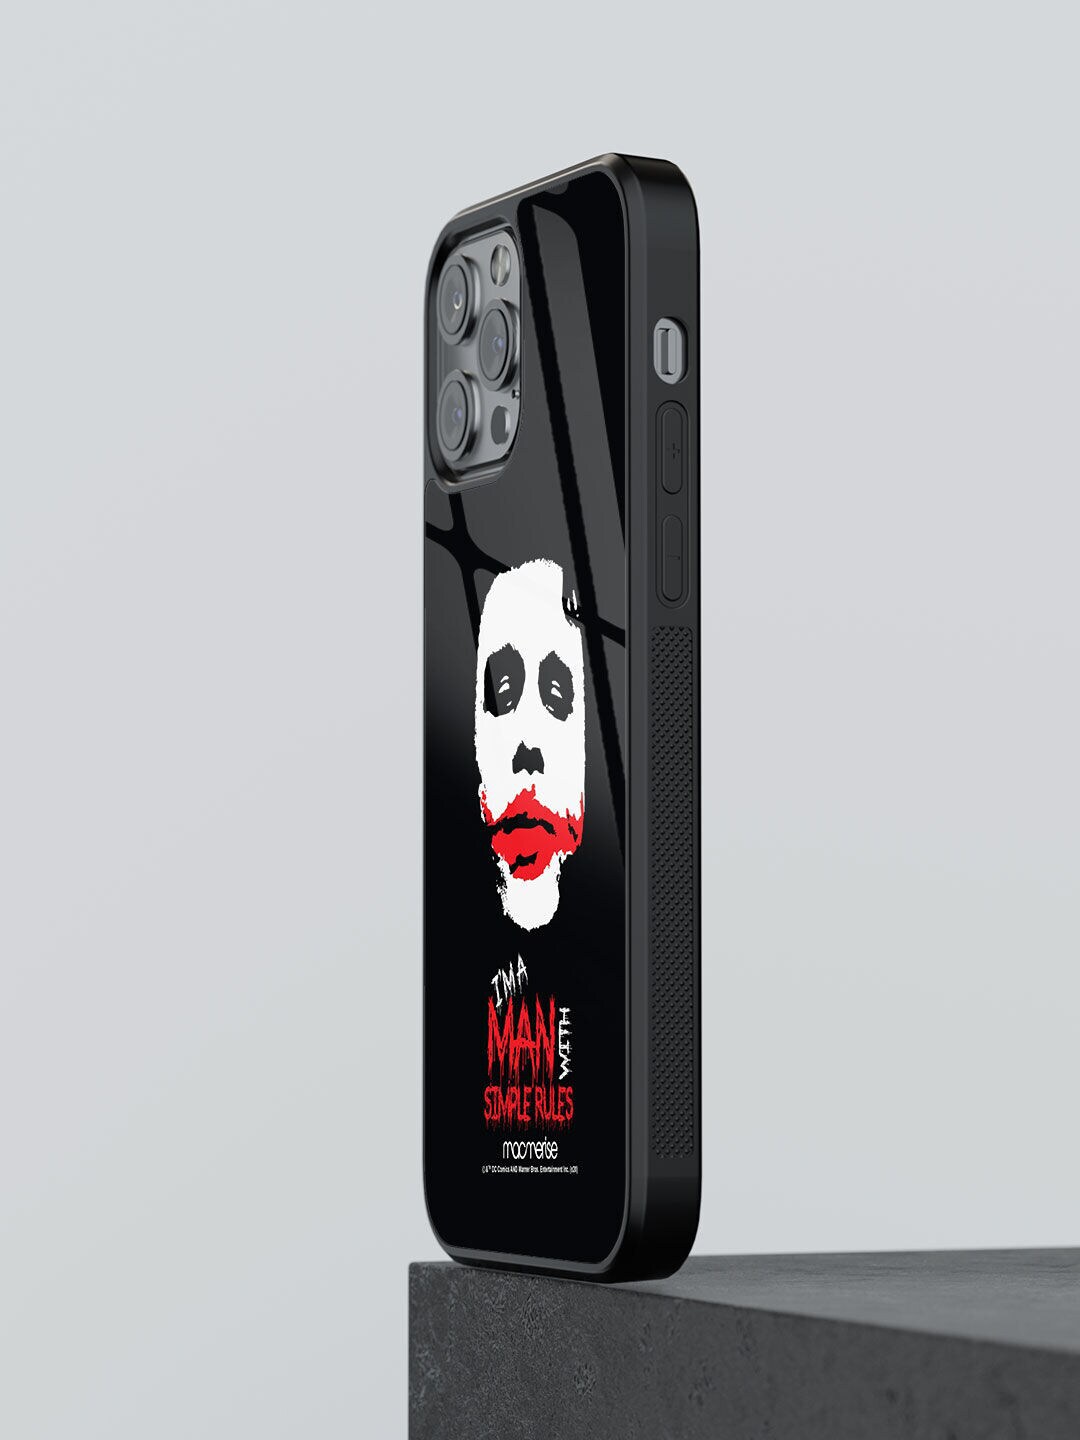 macmerise Black Printed Iphone 12 Pro Max Mobile Case Price in India